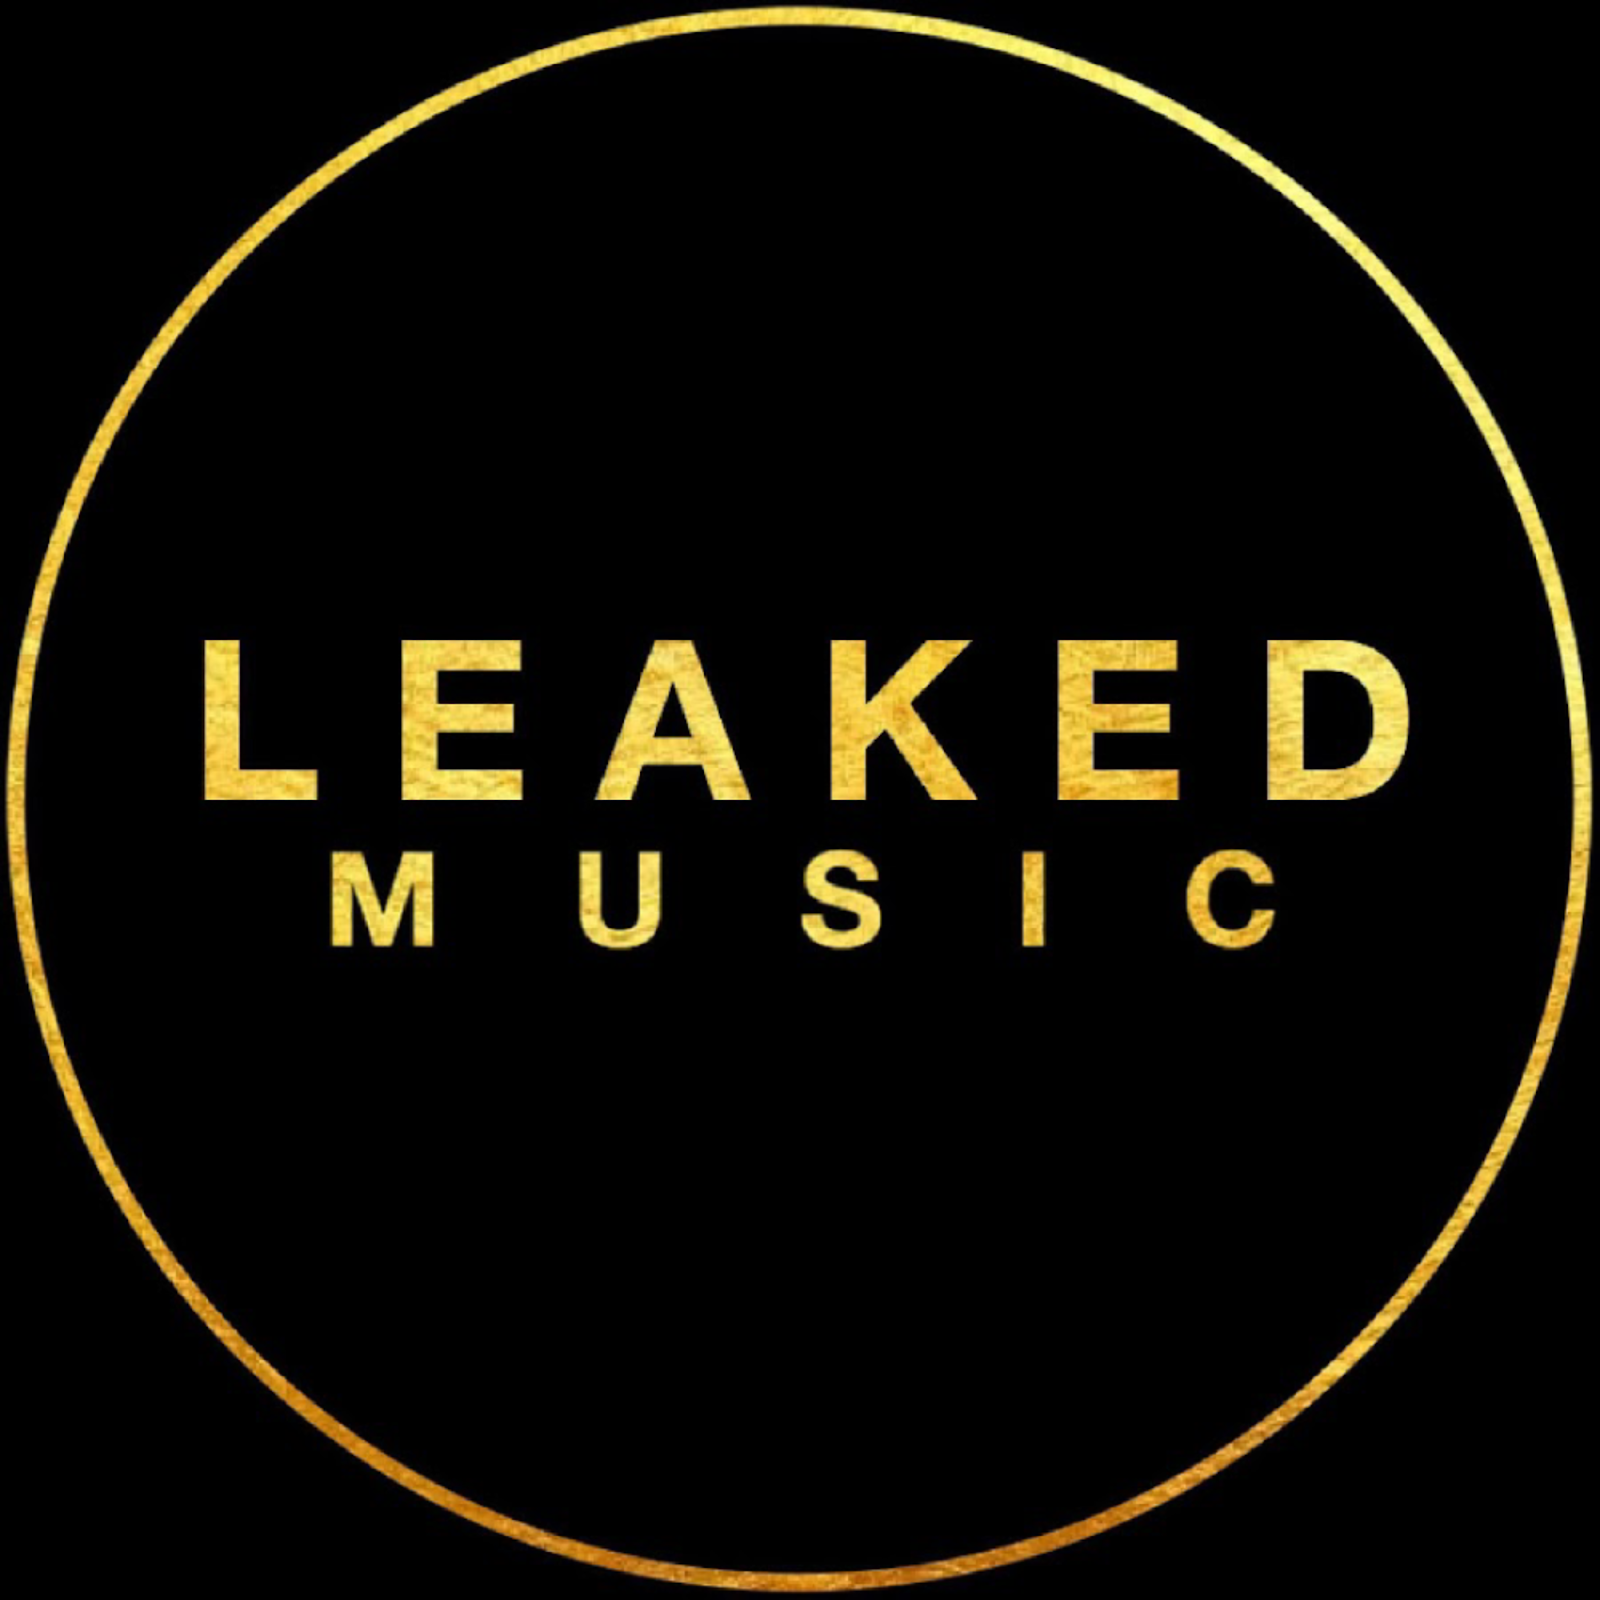 Music leaked